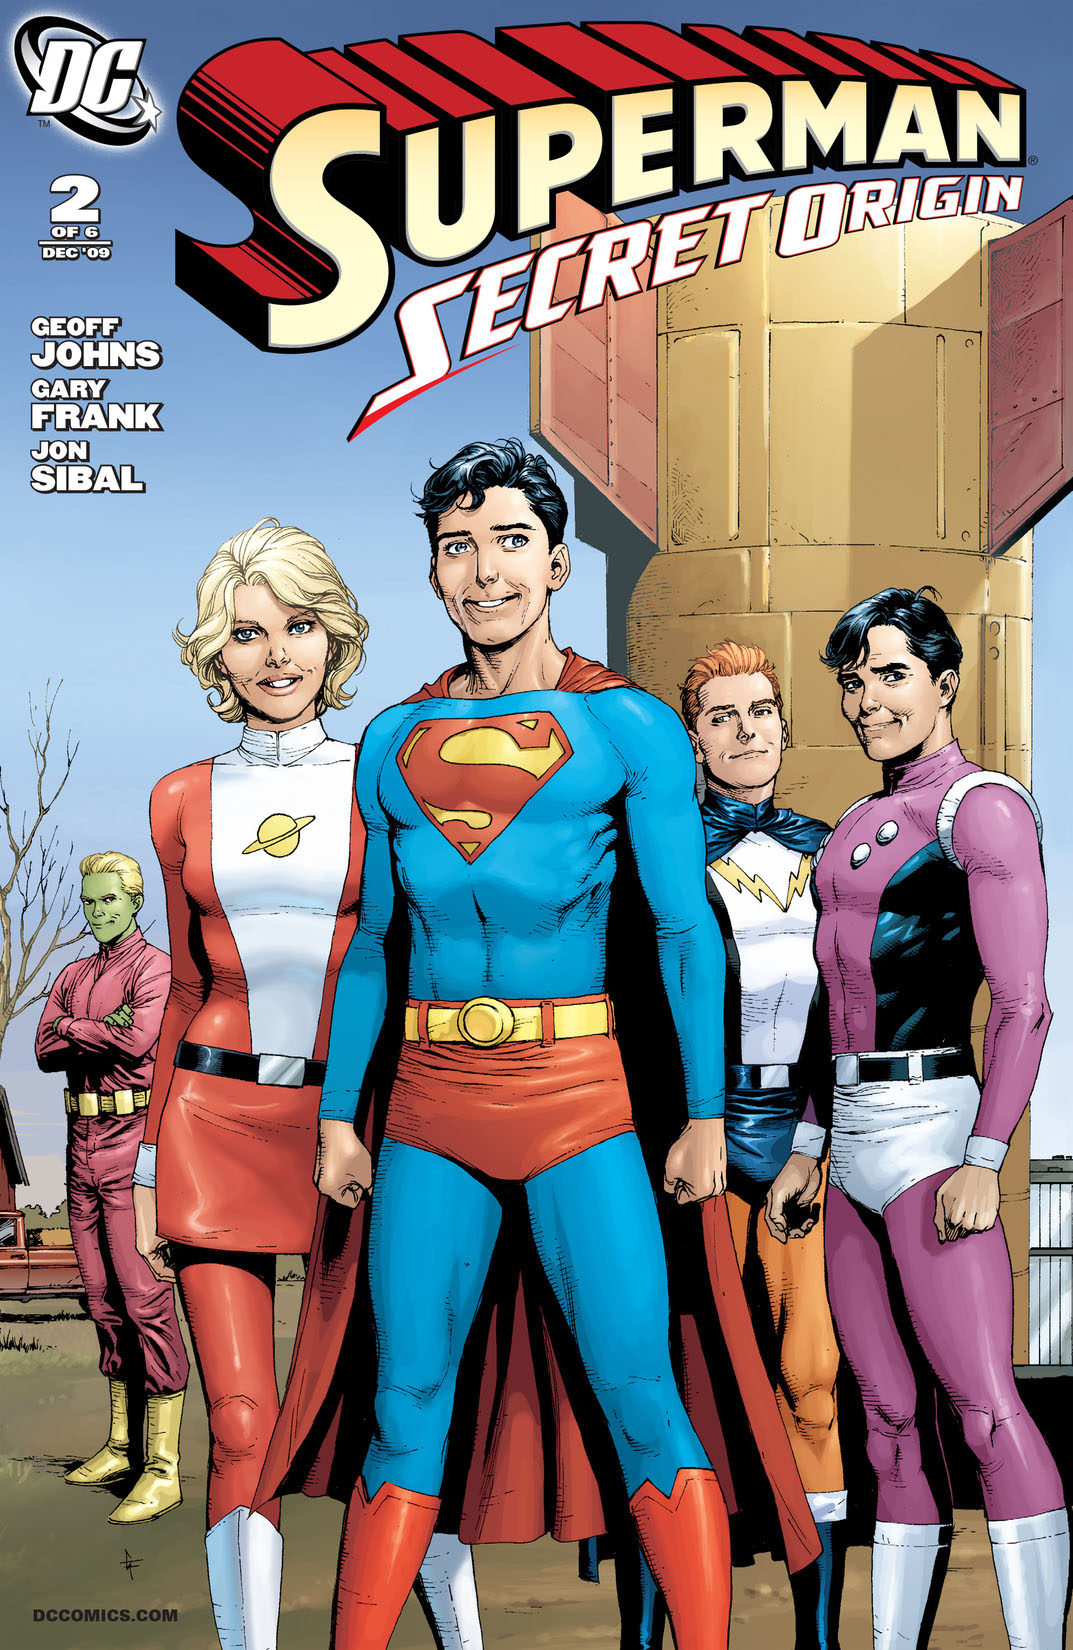 Superman: Secret Origin #2 preview images